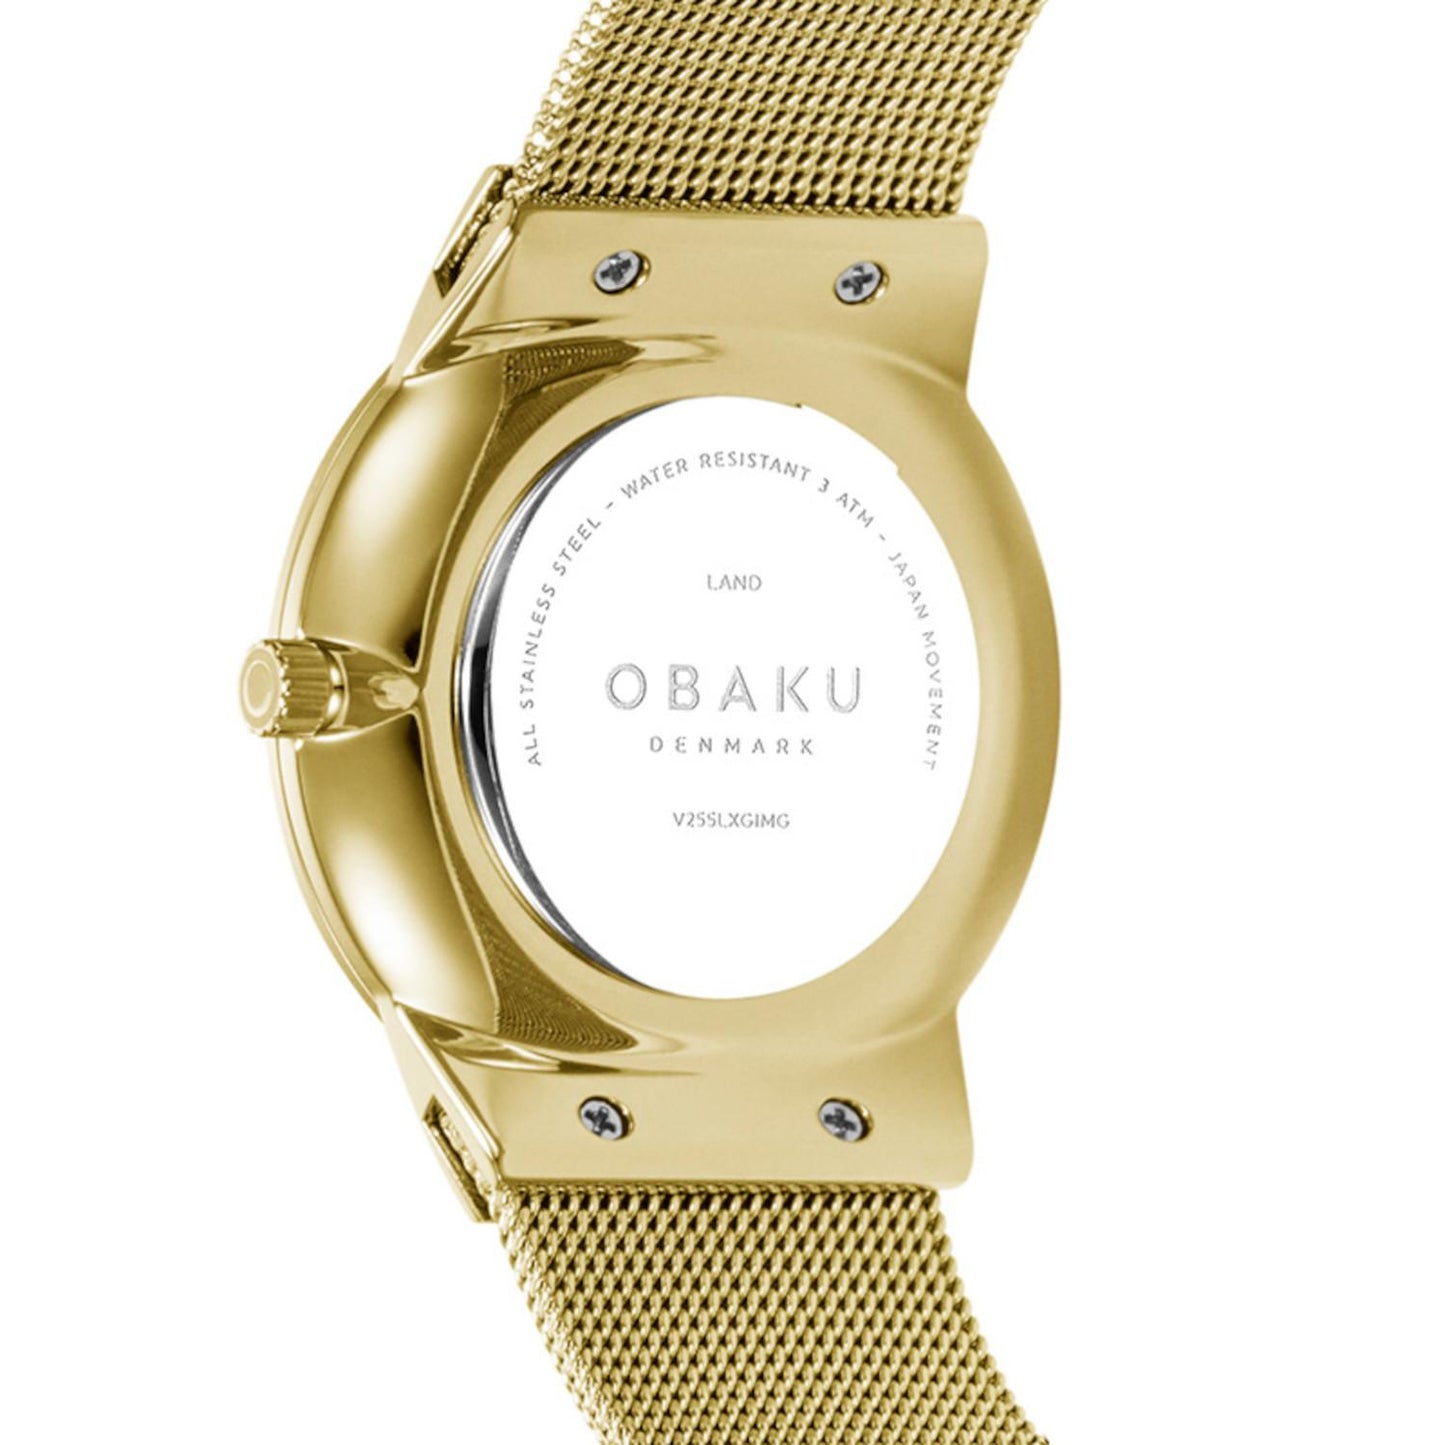 Reloj Obaku Denmark V255LXGIMG Land Clásico minimalista chapado-Dorado